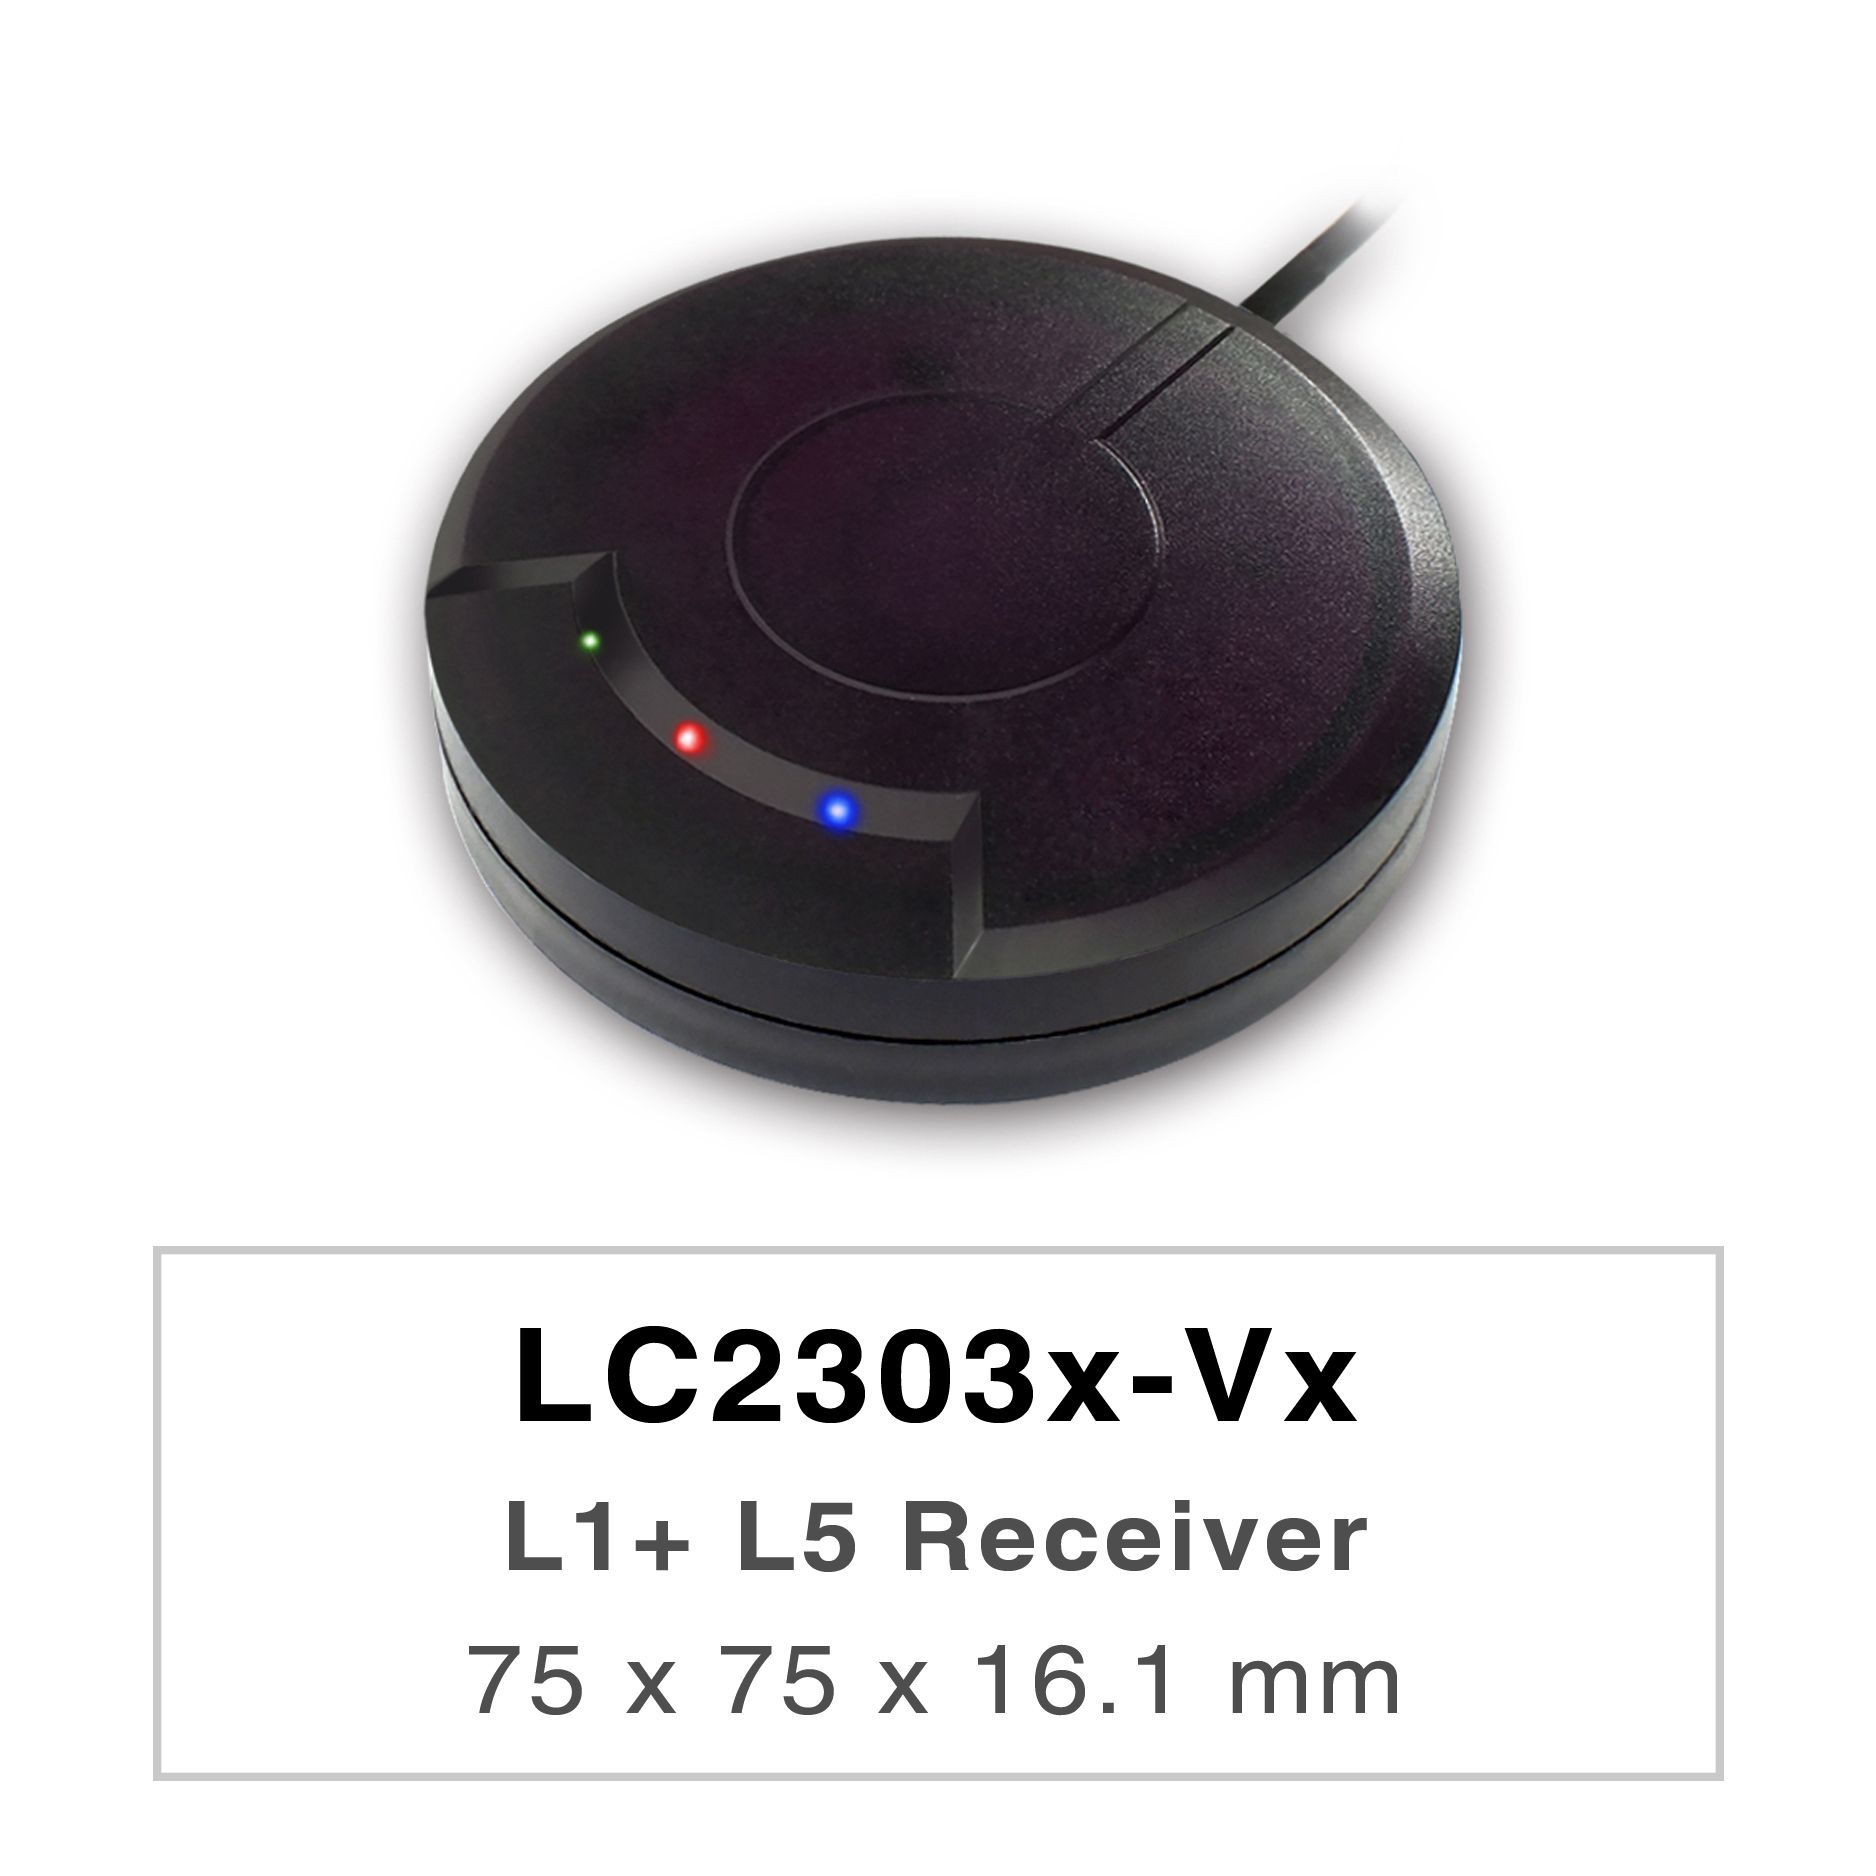 LC2303x-Vx シリーズの製品は高性能デュアルバンド GNSS レシーバー (GNSS マウスとも呼ばれます) であり、すべての地球規模の民間ナビゲーション システム (GPS、GLONASS、BDS、GALILEO、QZSS、および IRNSS) を追跡できます。